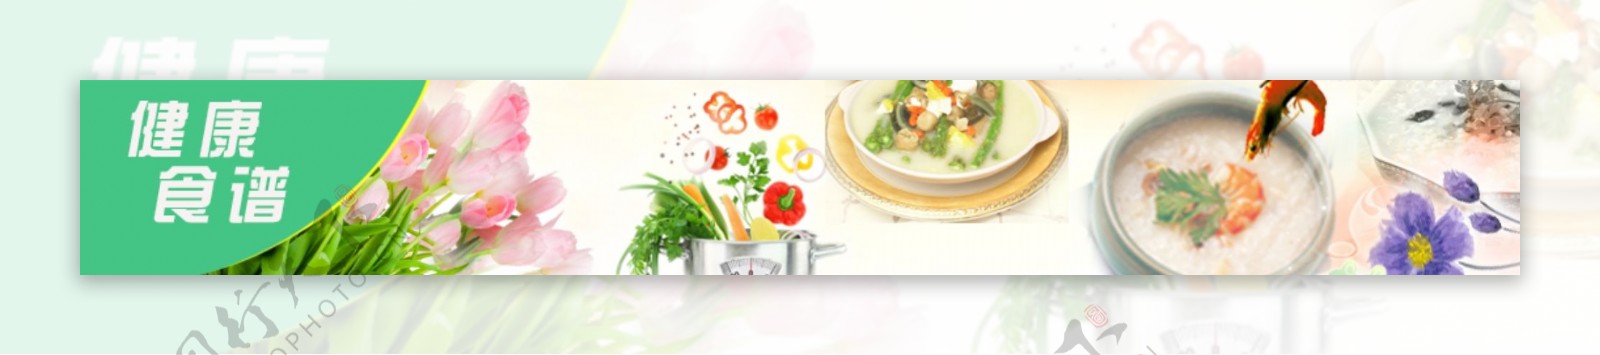 网站小广告蔬菜食谱营养